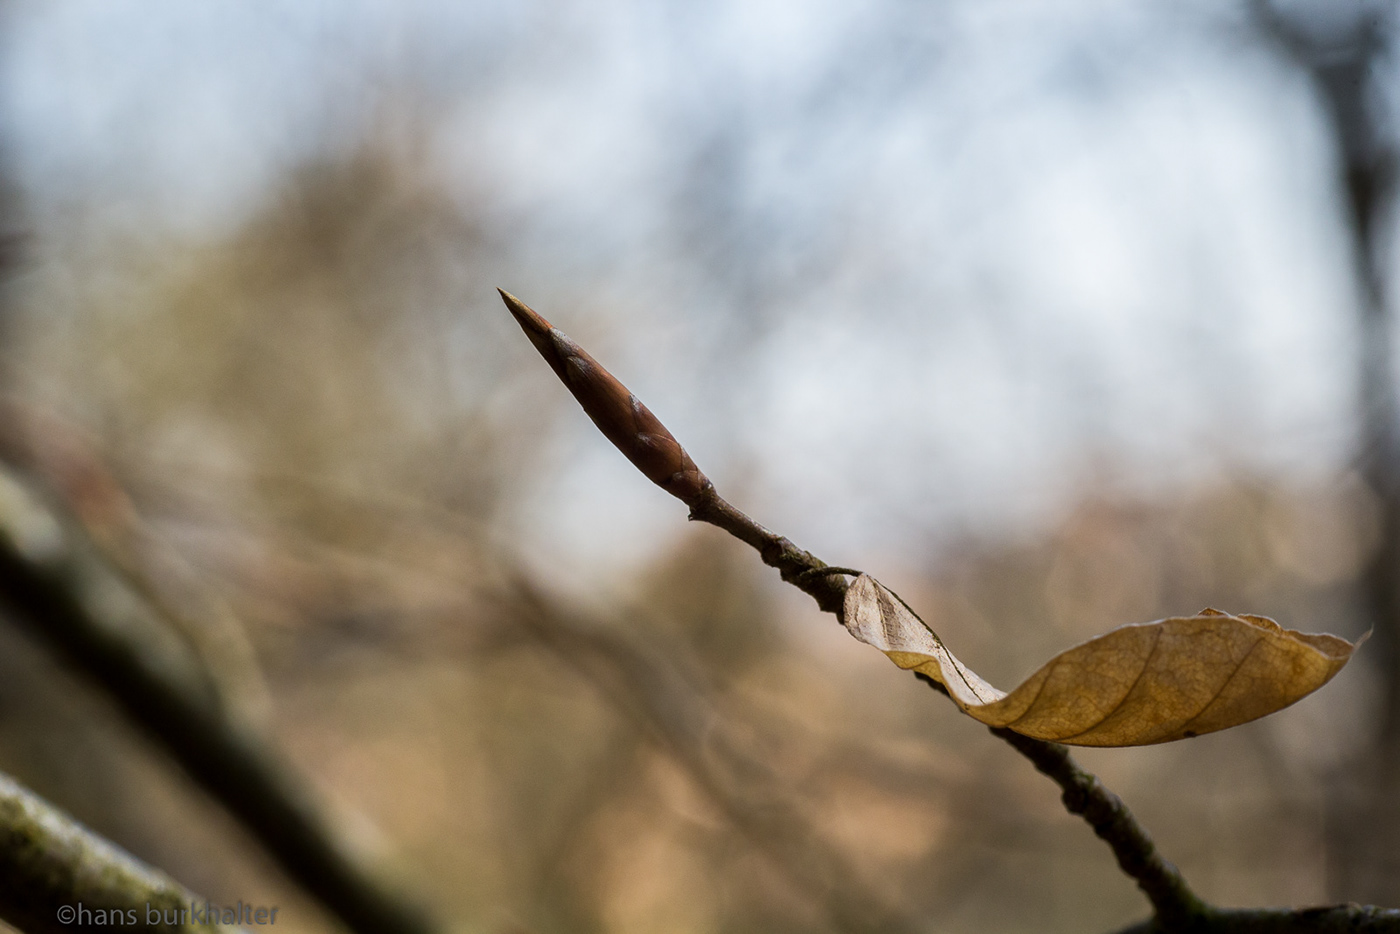 Beobachten Burkhalter forest Frühlingserwachen macro Observe Spring Awakening wald